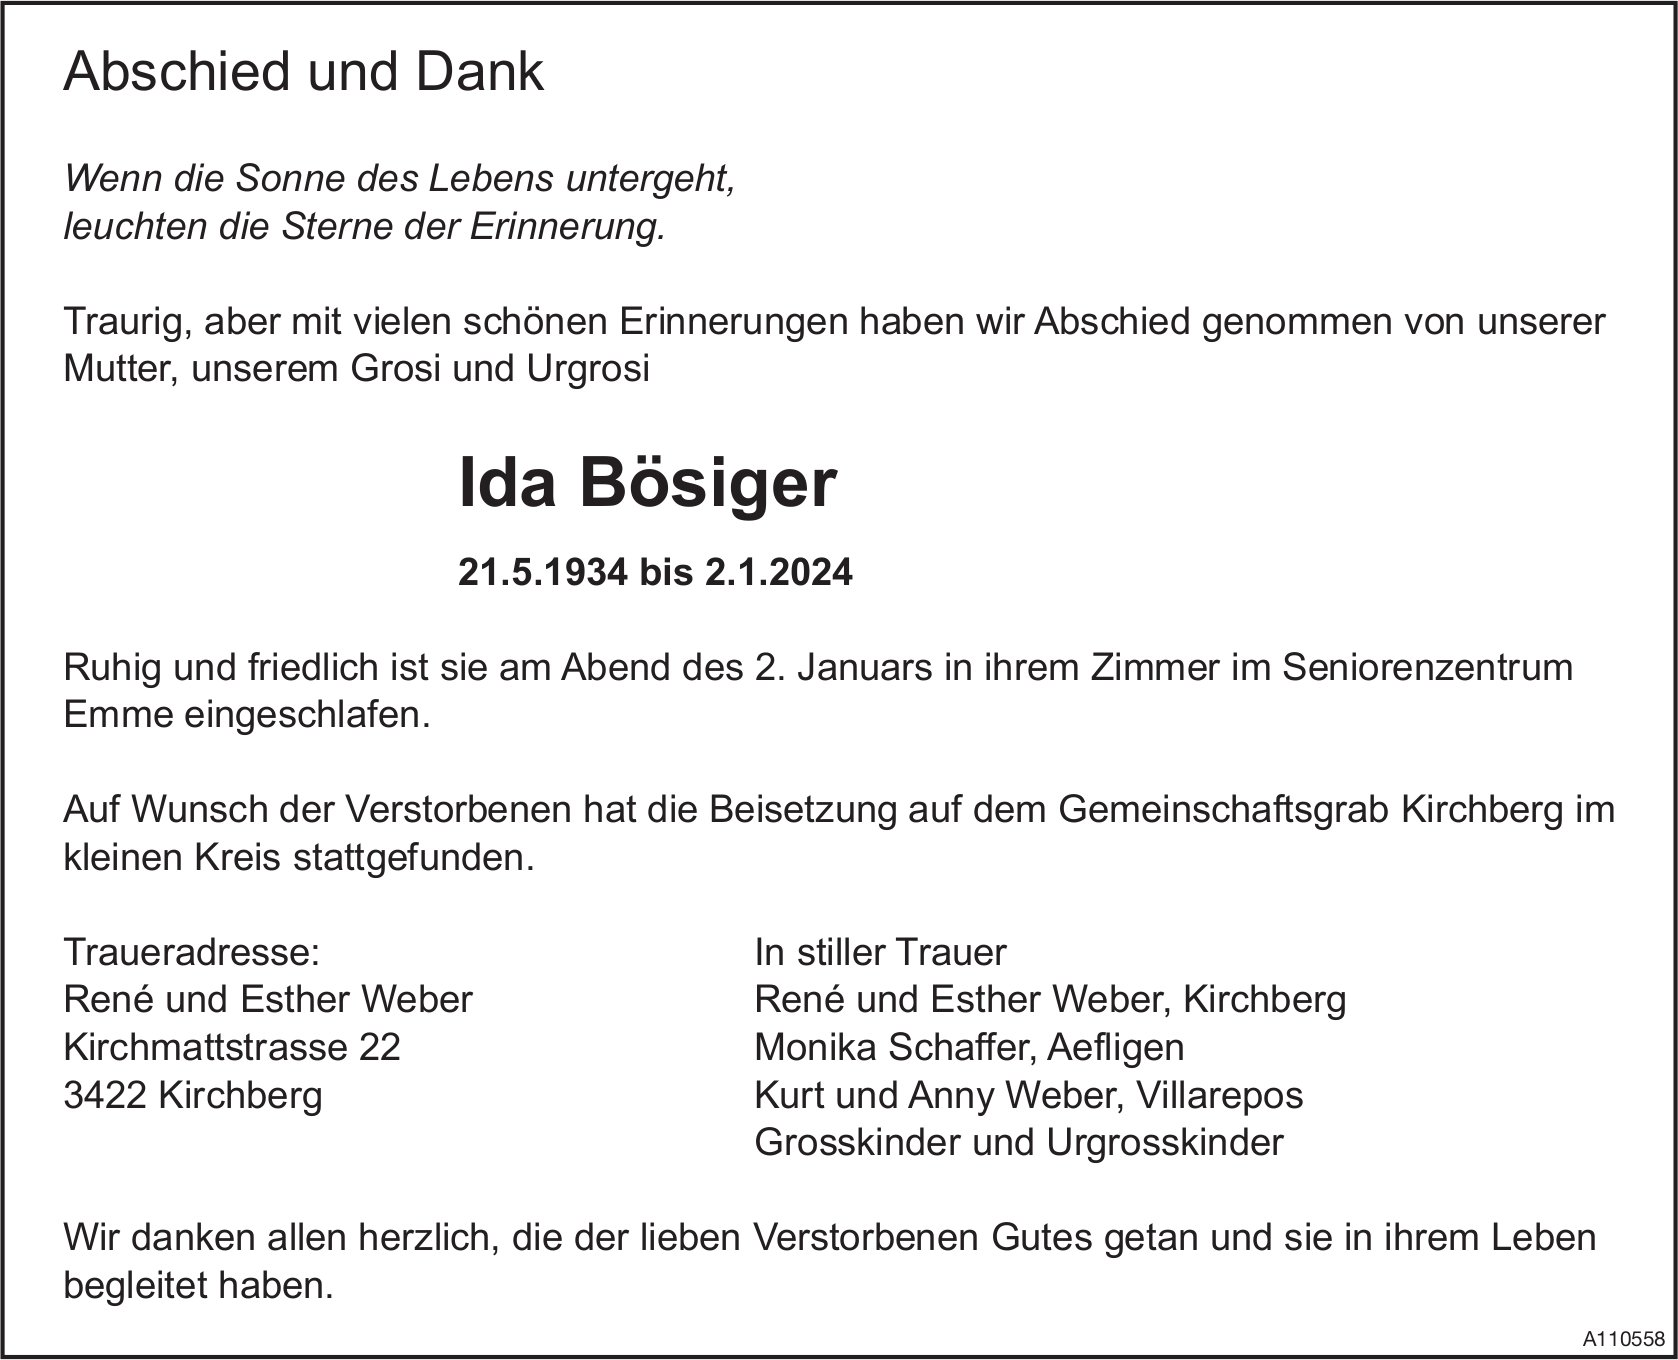 Ida Bösiger, im Januar 2024 / TA + DS